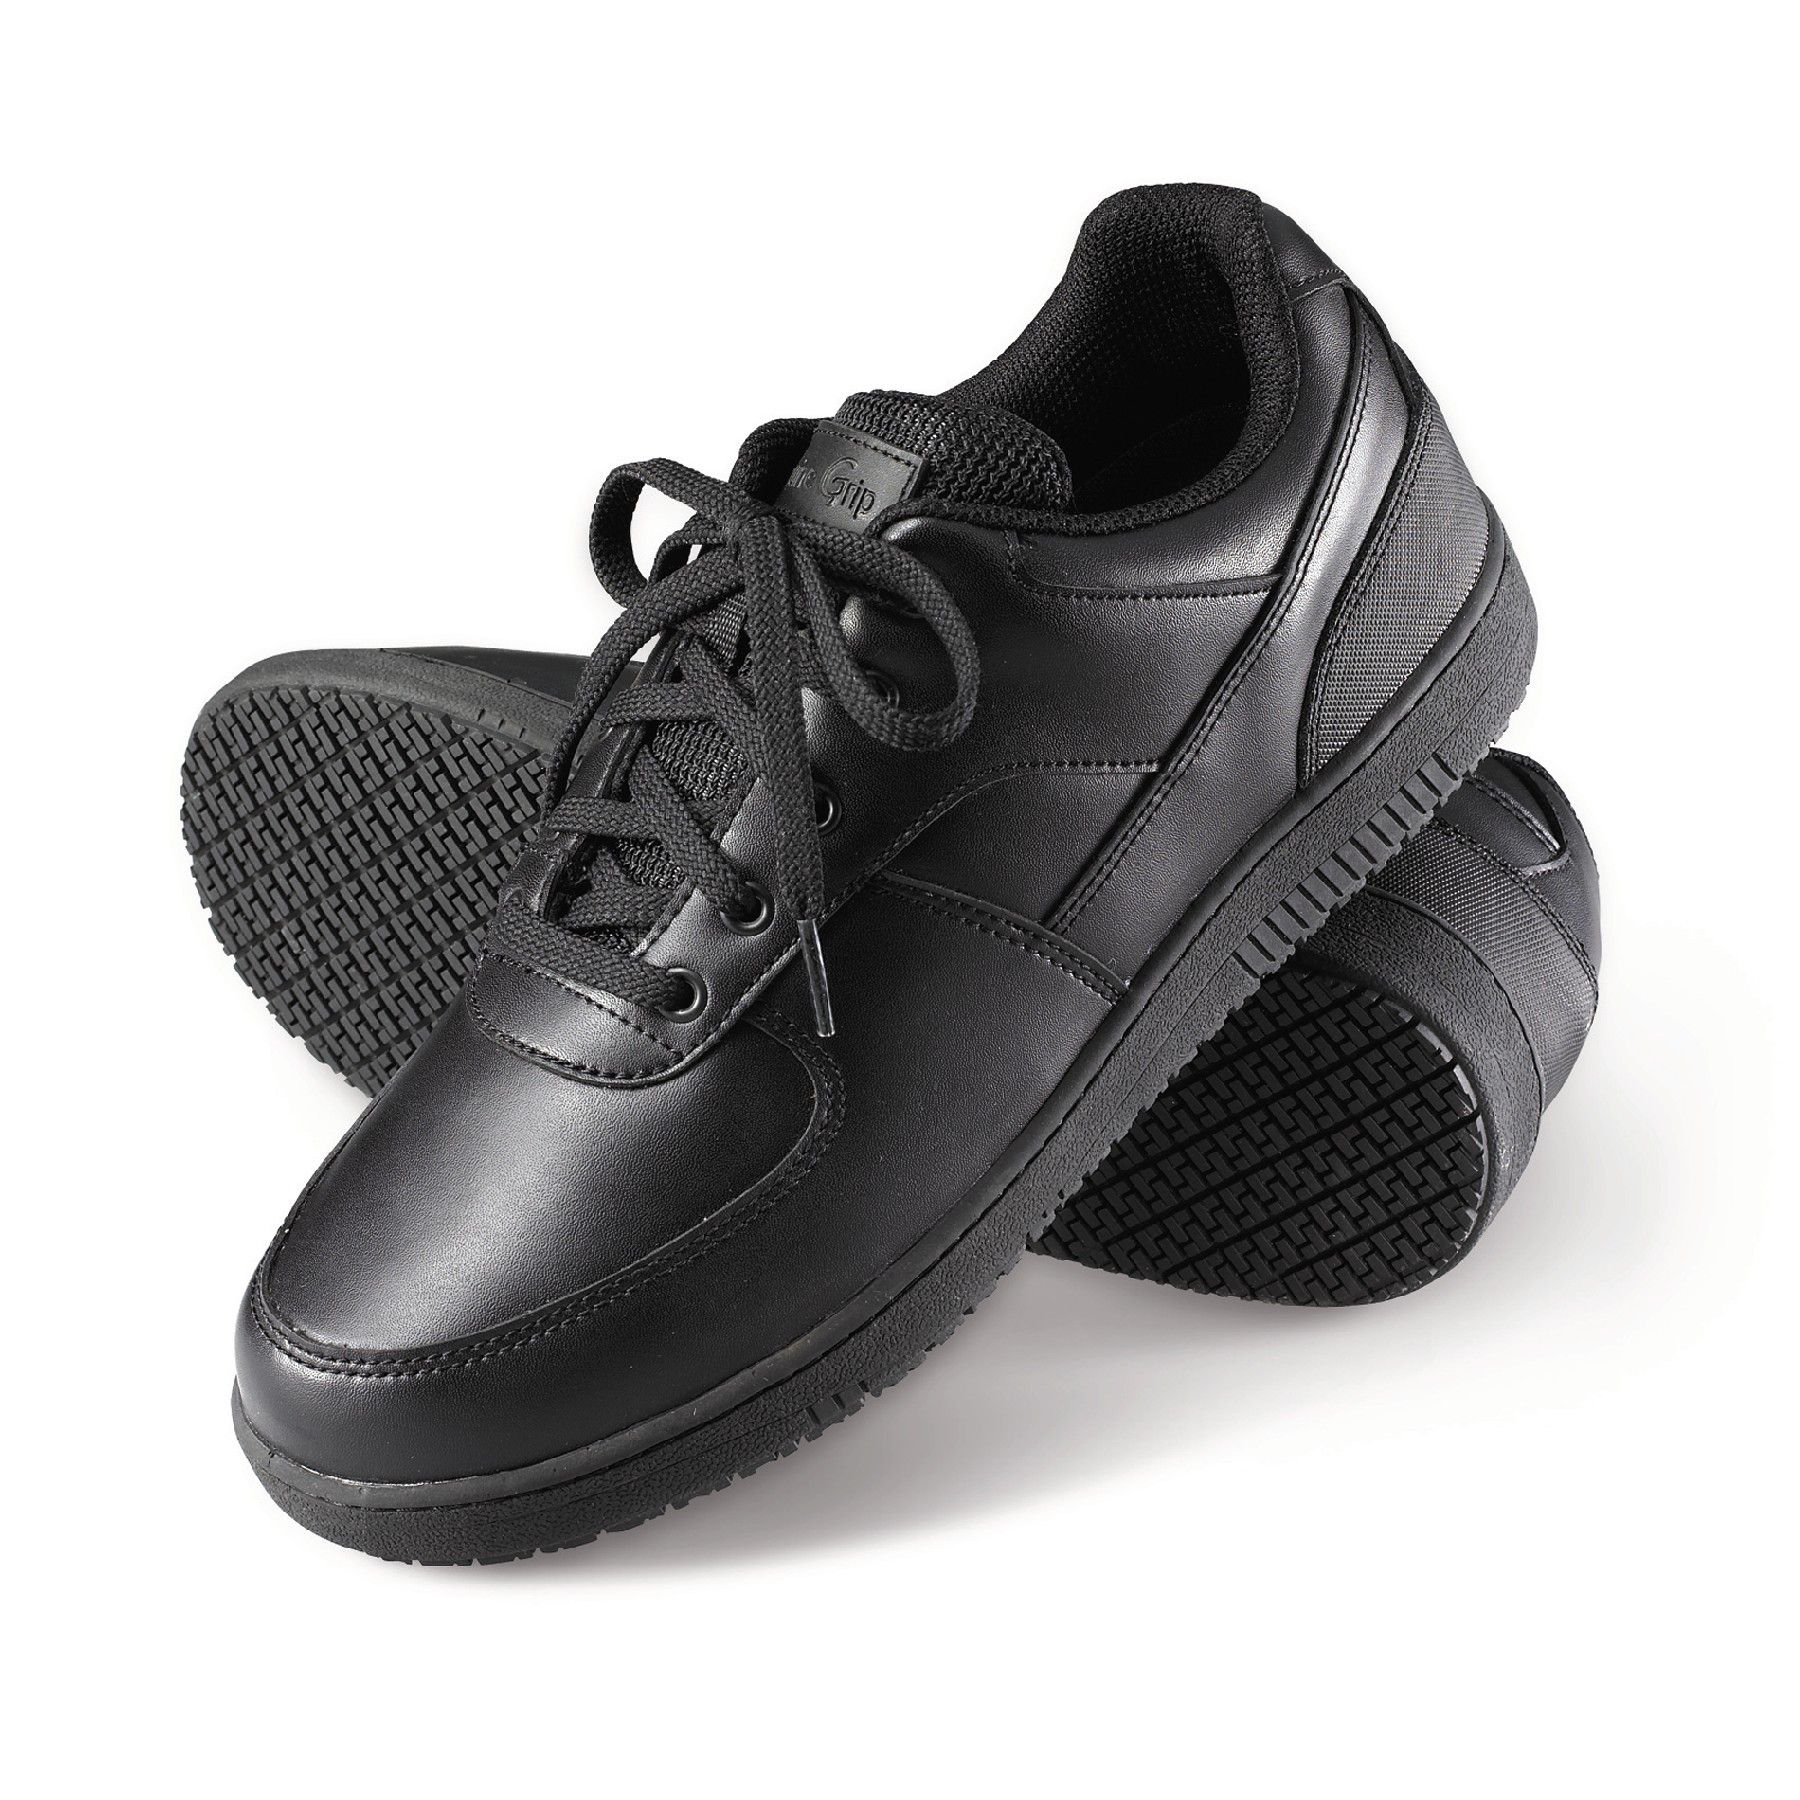 polishable slip resistant shoes off 63 